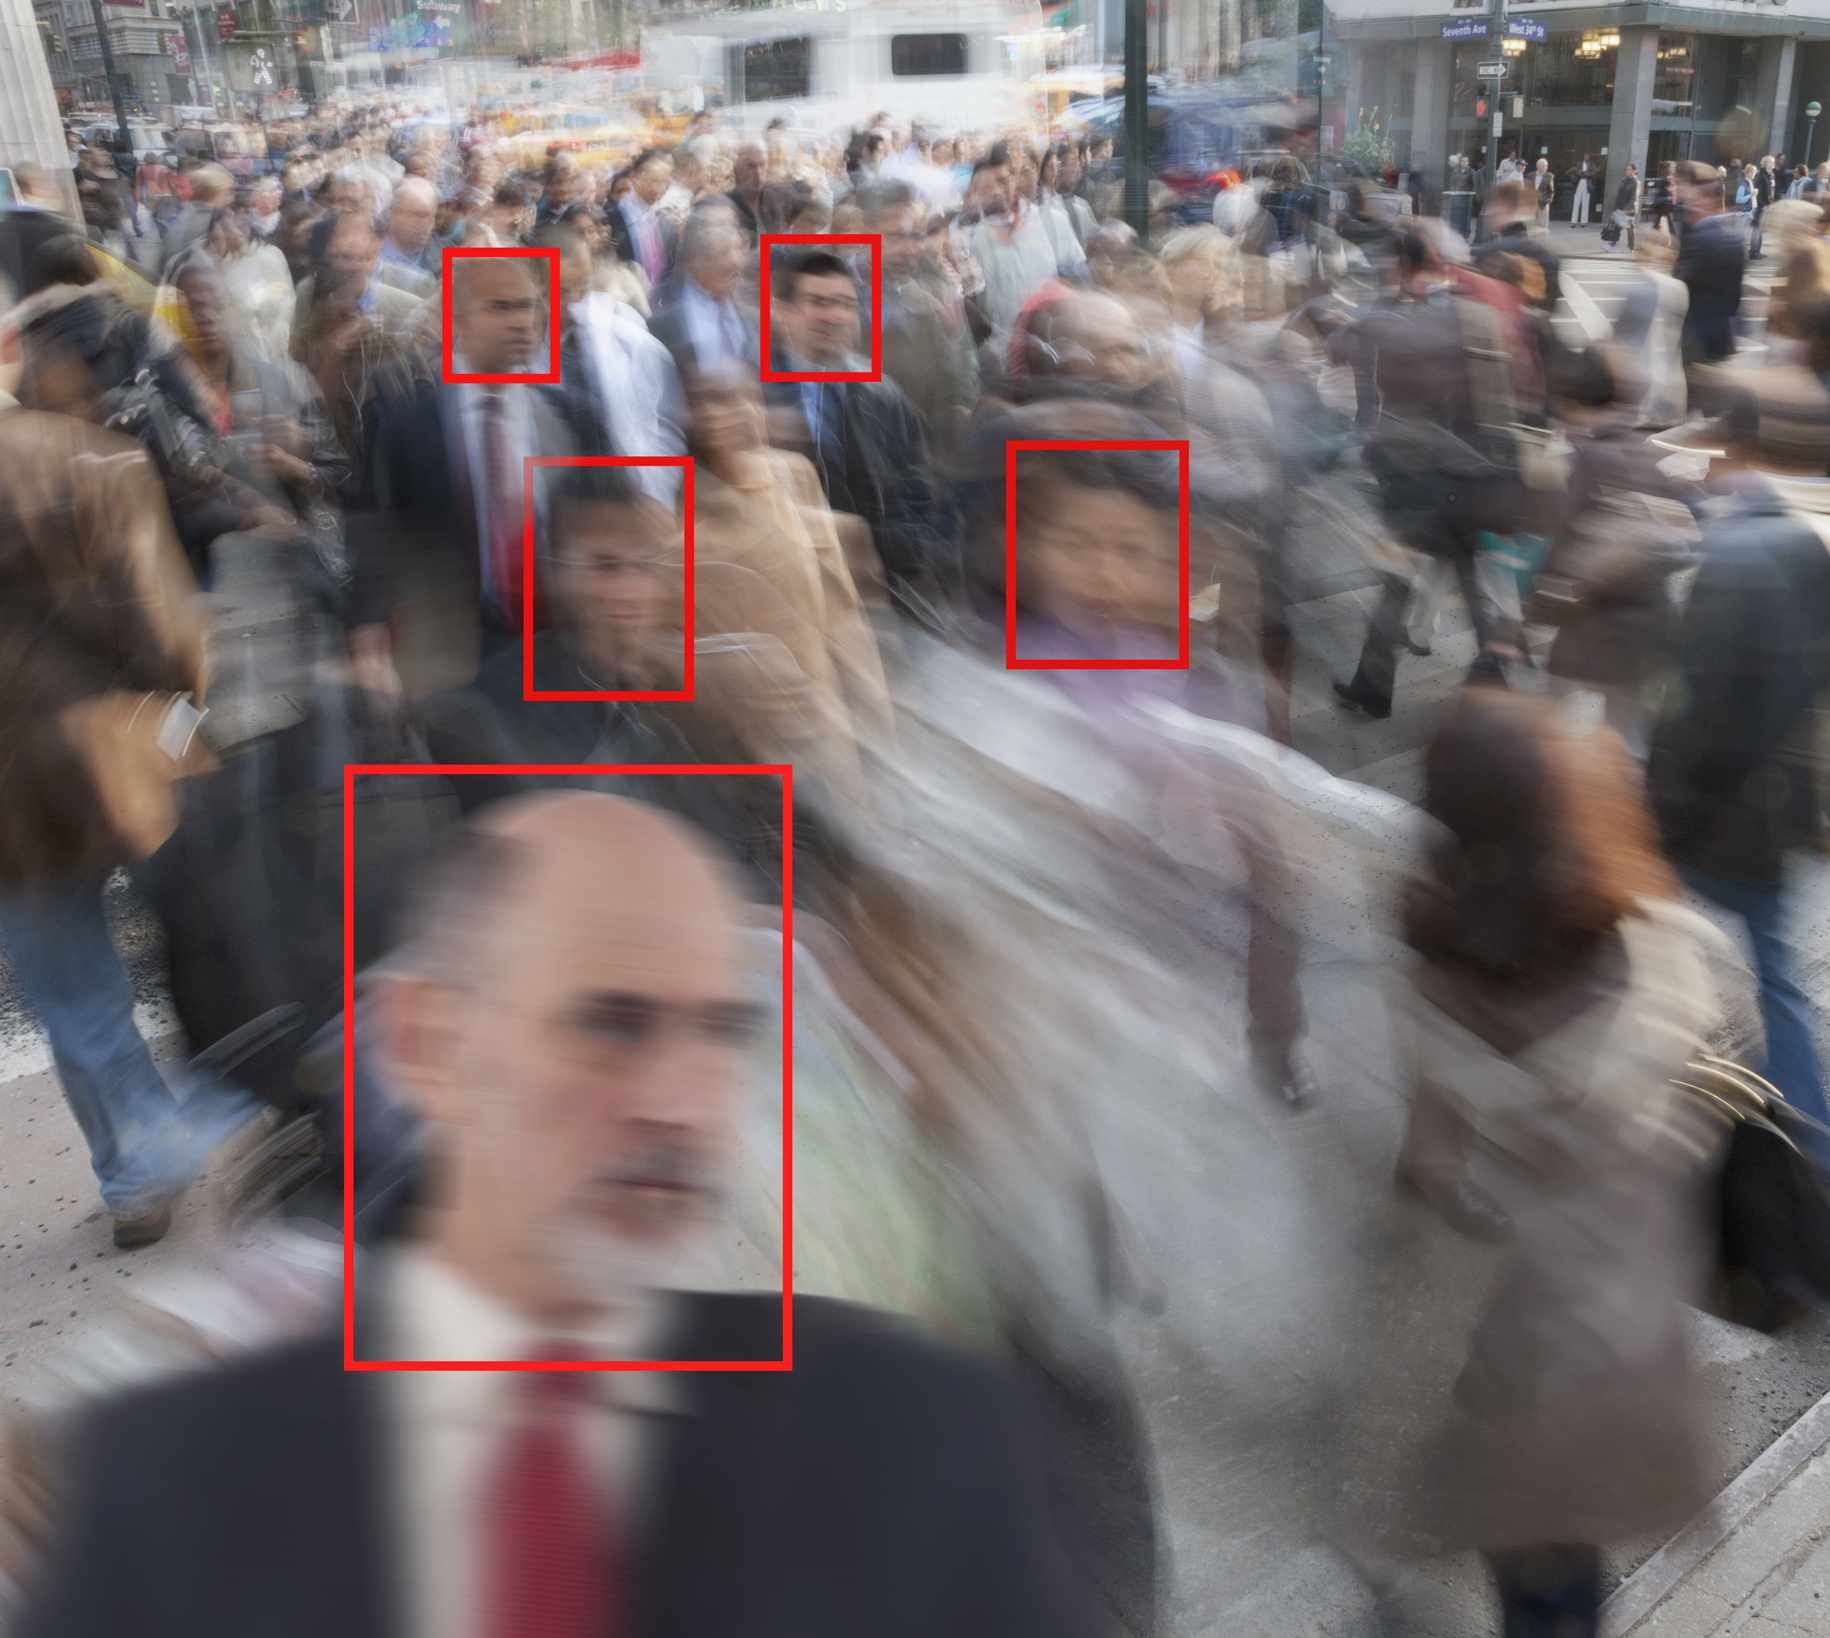 Reconhecimento facial usado em pedestres em uma rua de Nova York.